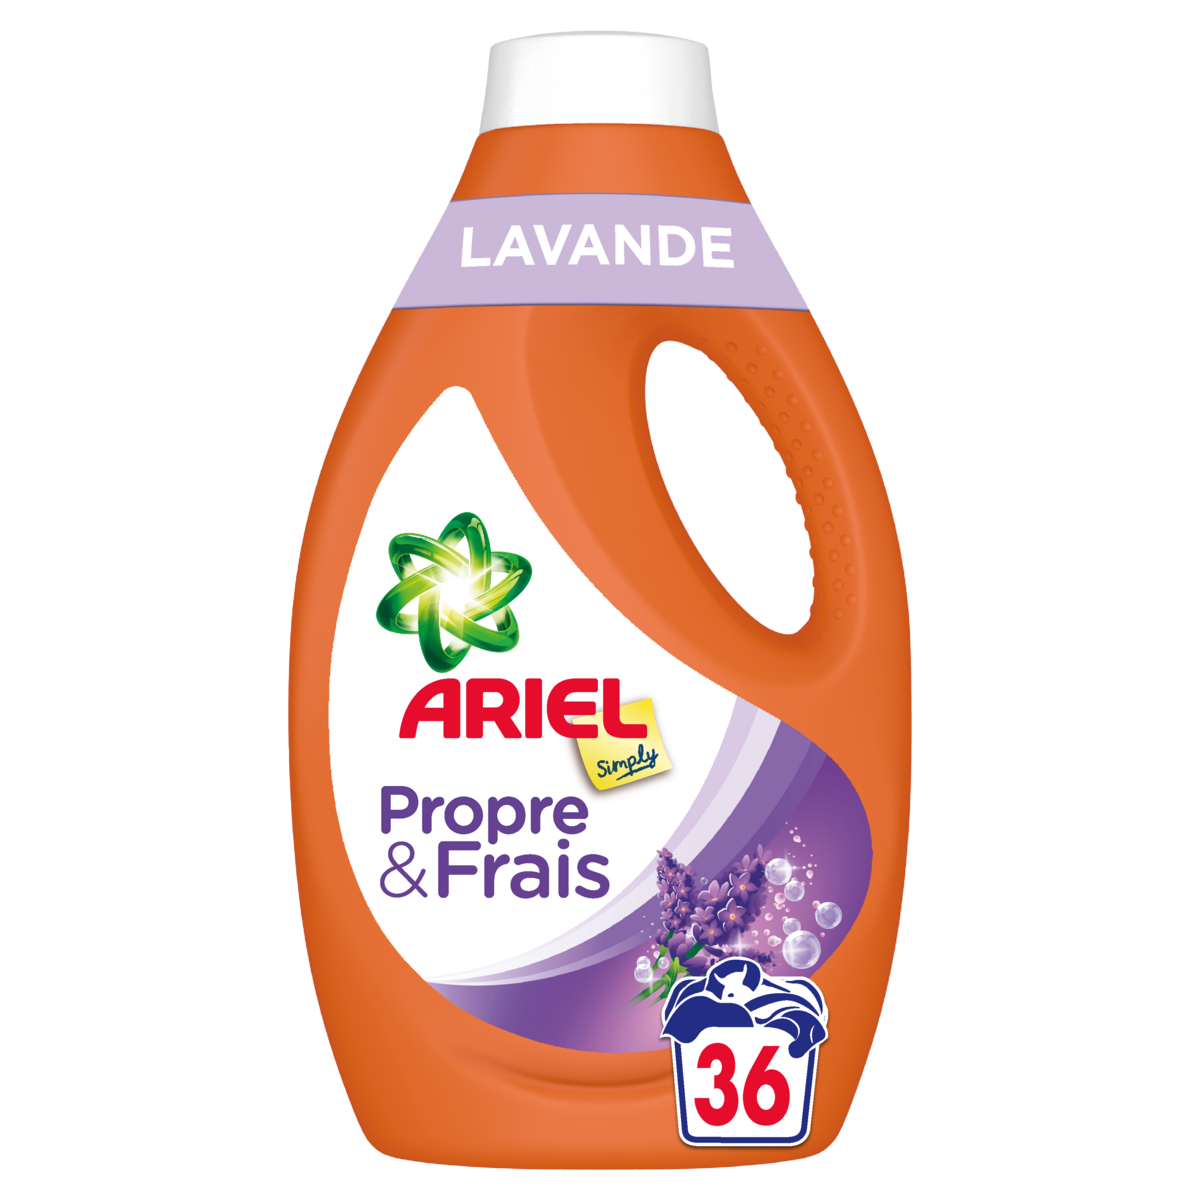 ARIEL Simply Lessive liquide lavande 36 lavages 1.8l